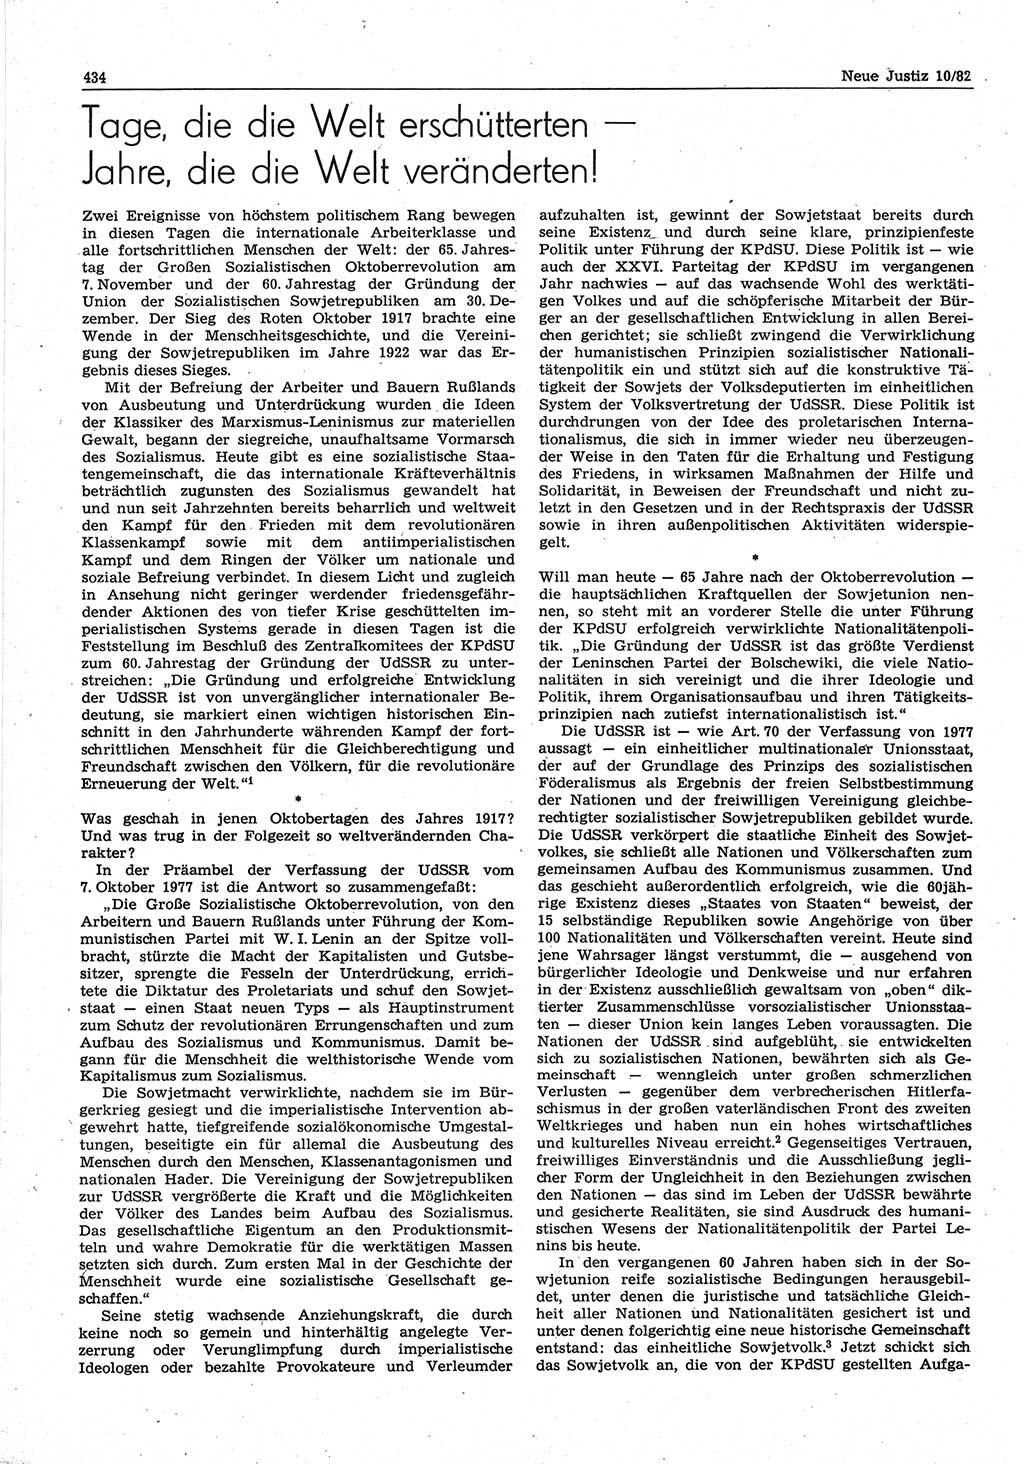 Neue Justiz (NJ), Zeitschrift für sozialistisches Recht und Gesetzlichkeit [Deutsche Demokratische Republik (DDR)], 36. Jahrgang 1982, Seite 434 (NJ DDR 1982, S. 434)